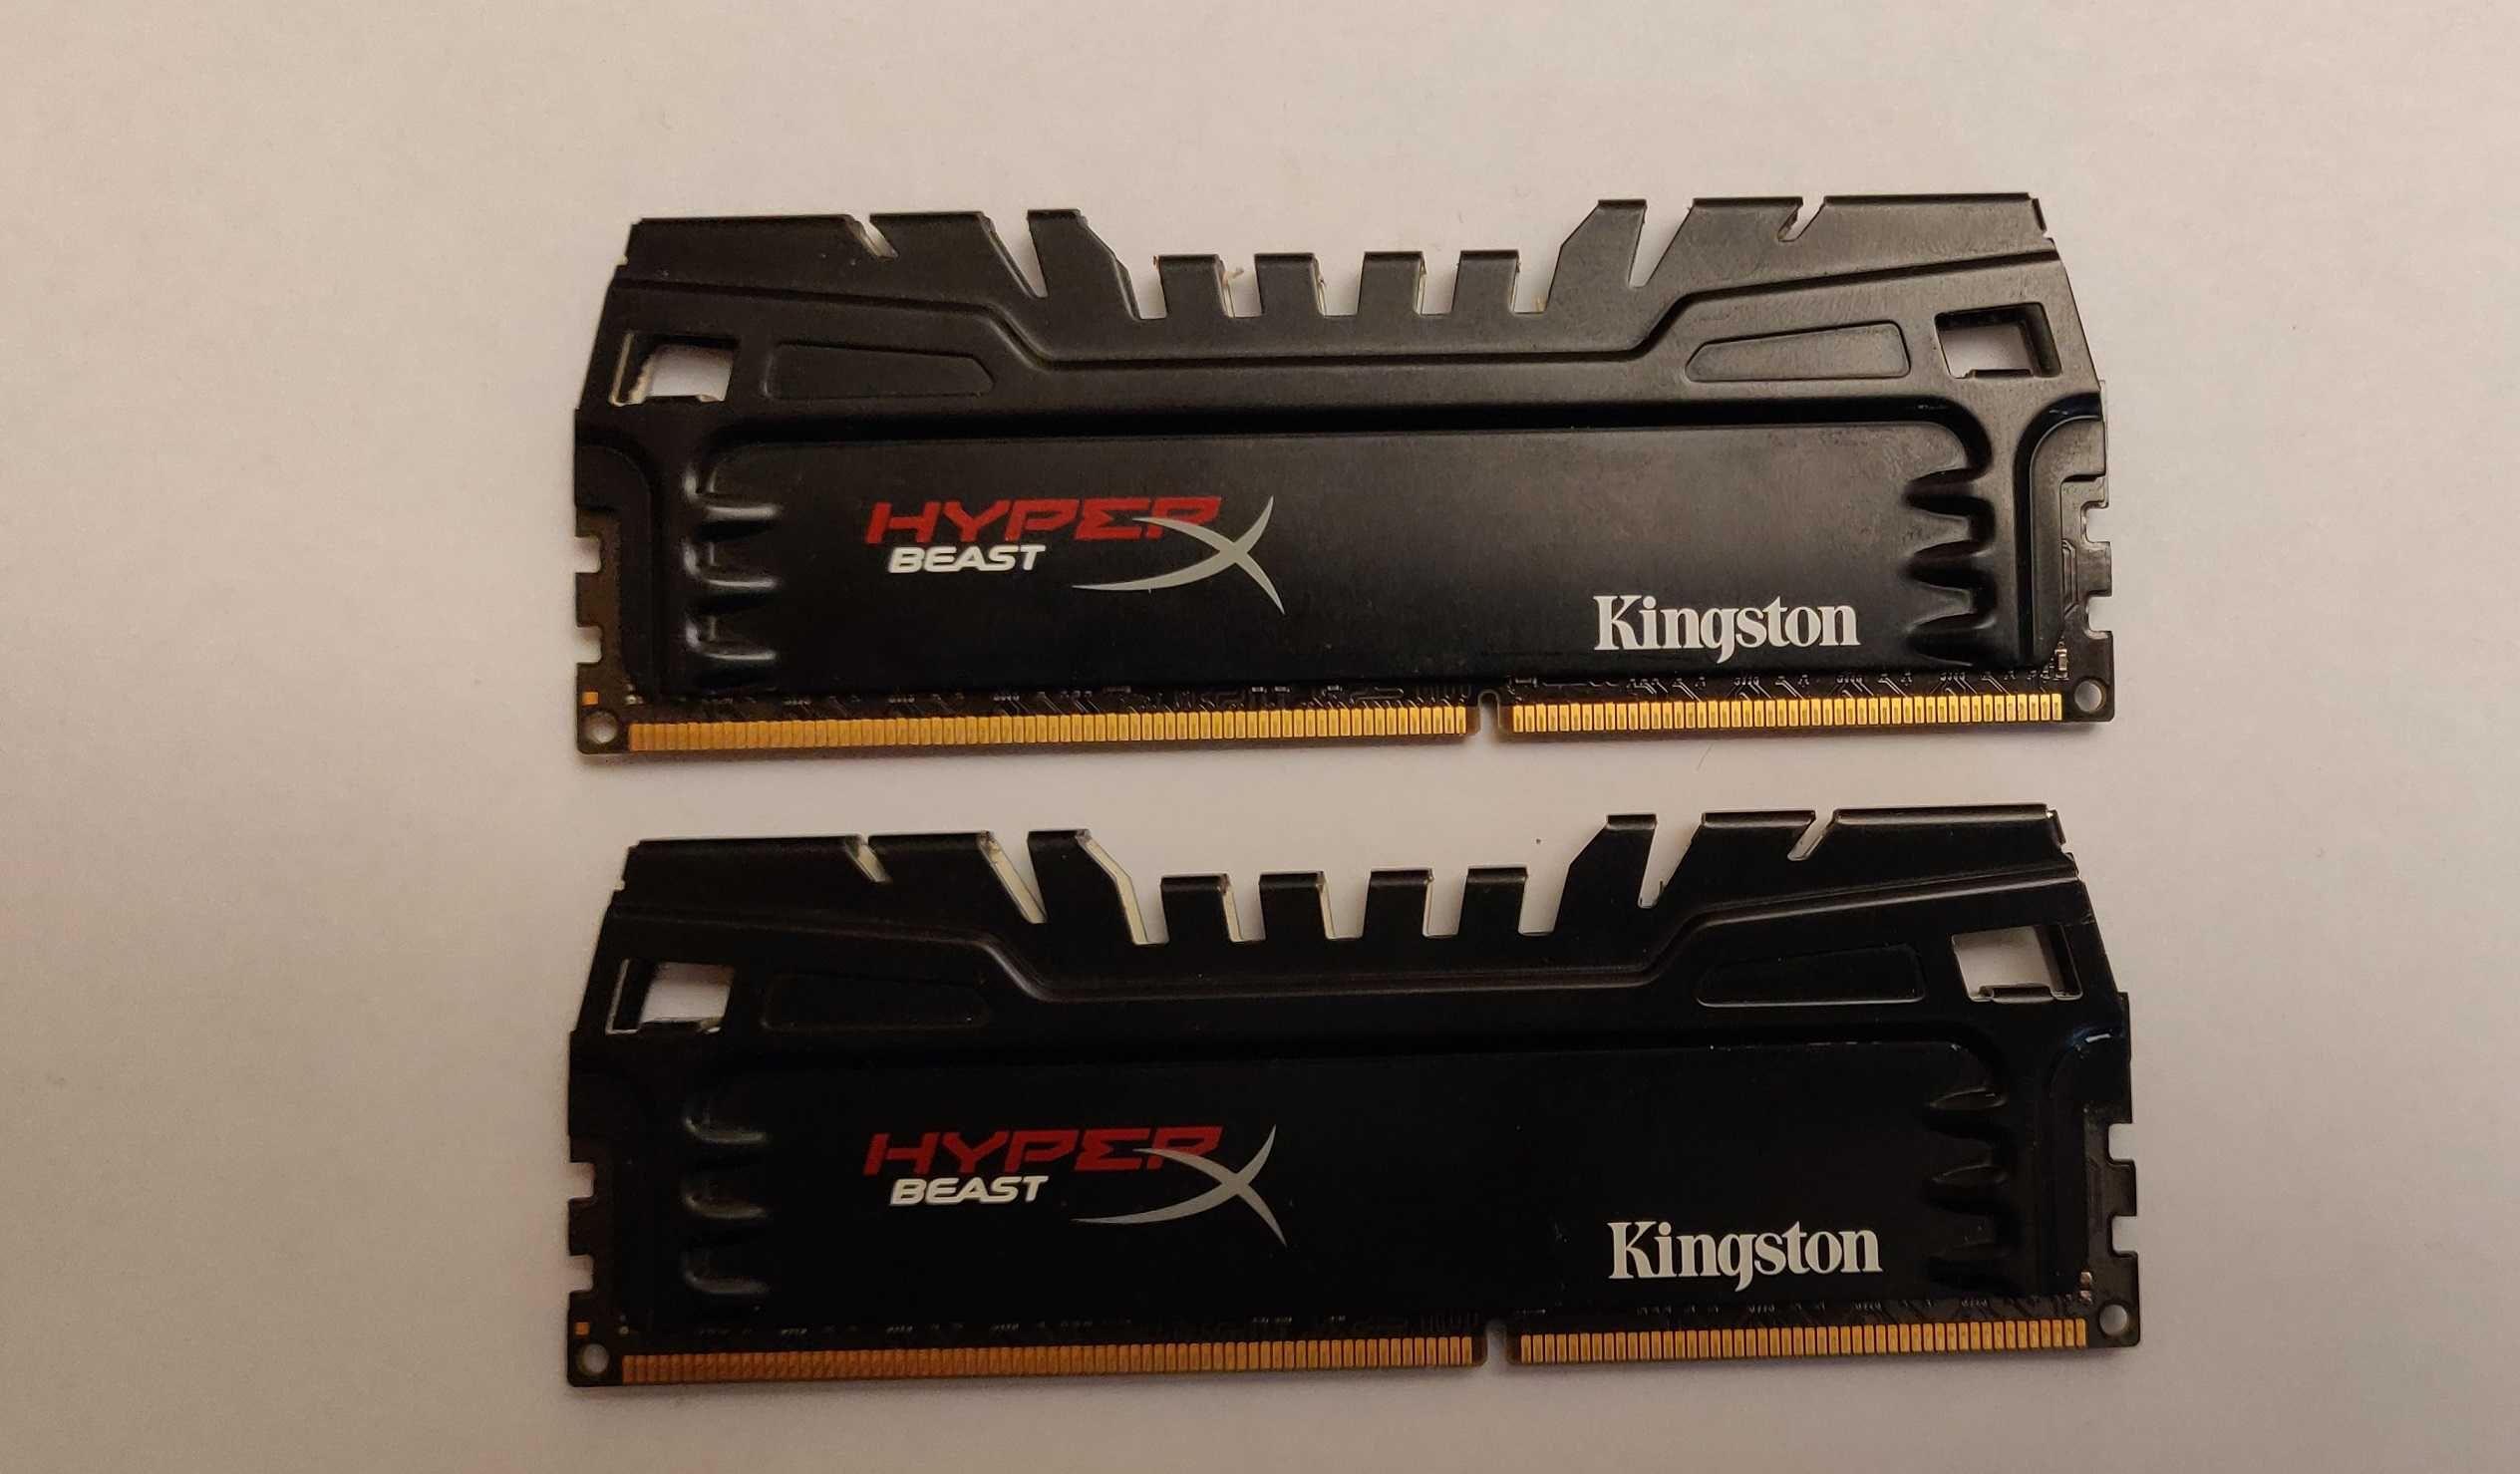 Kingston HyperX BEAST KHX24C11T3K2/8X